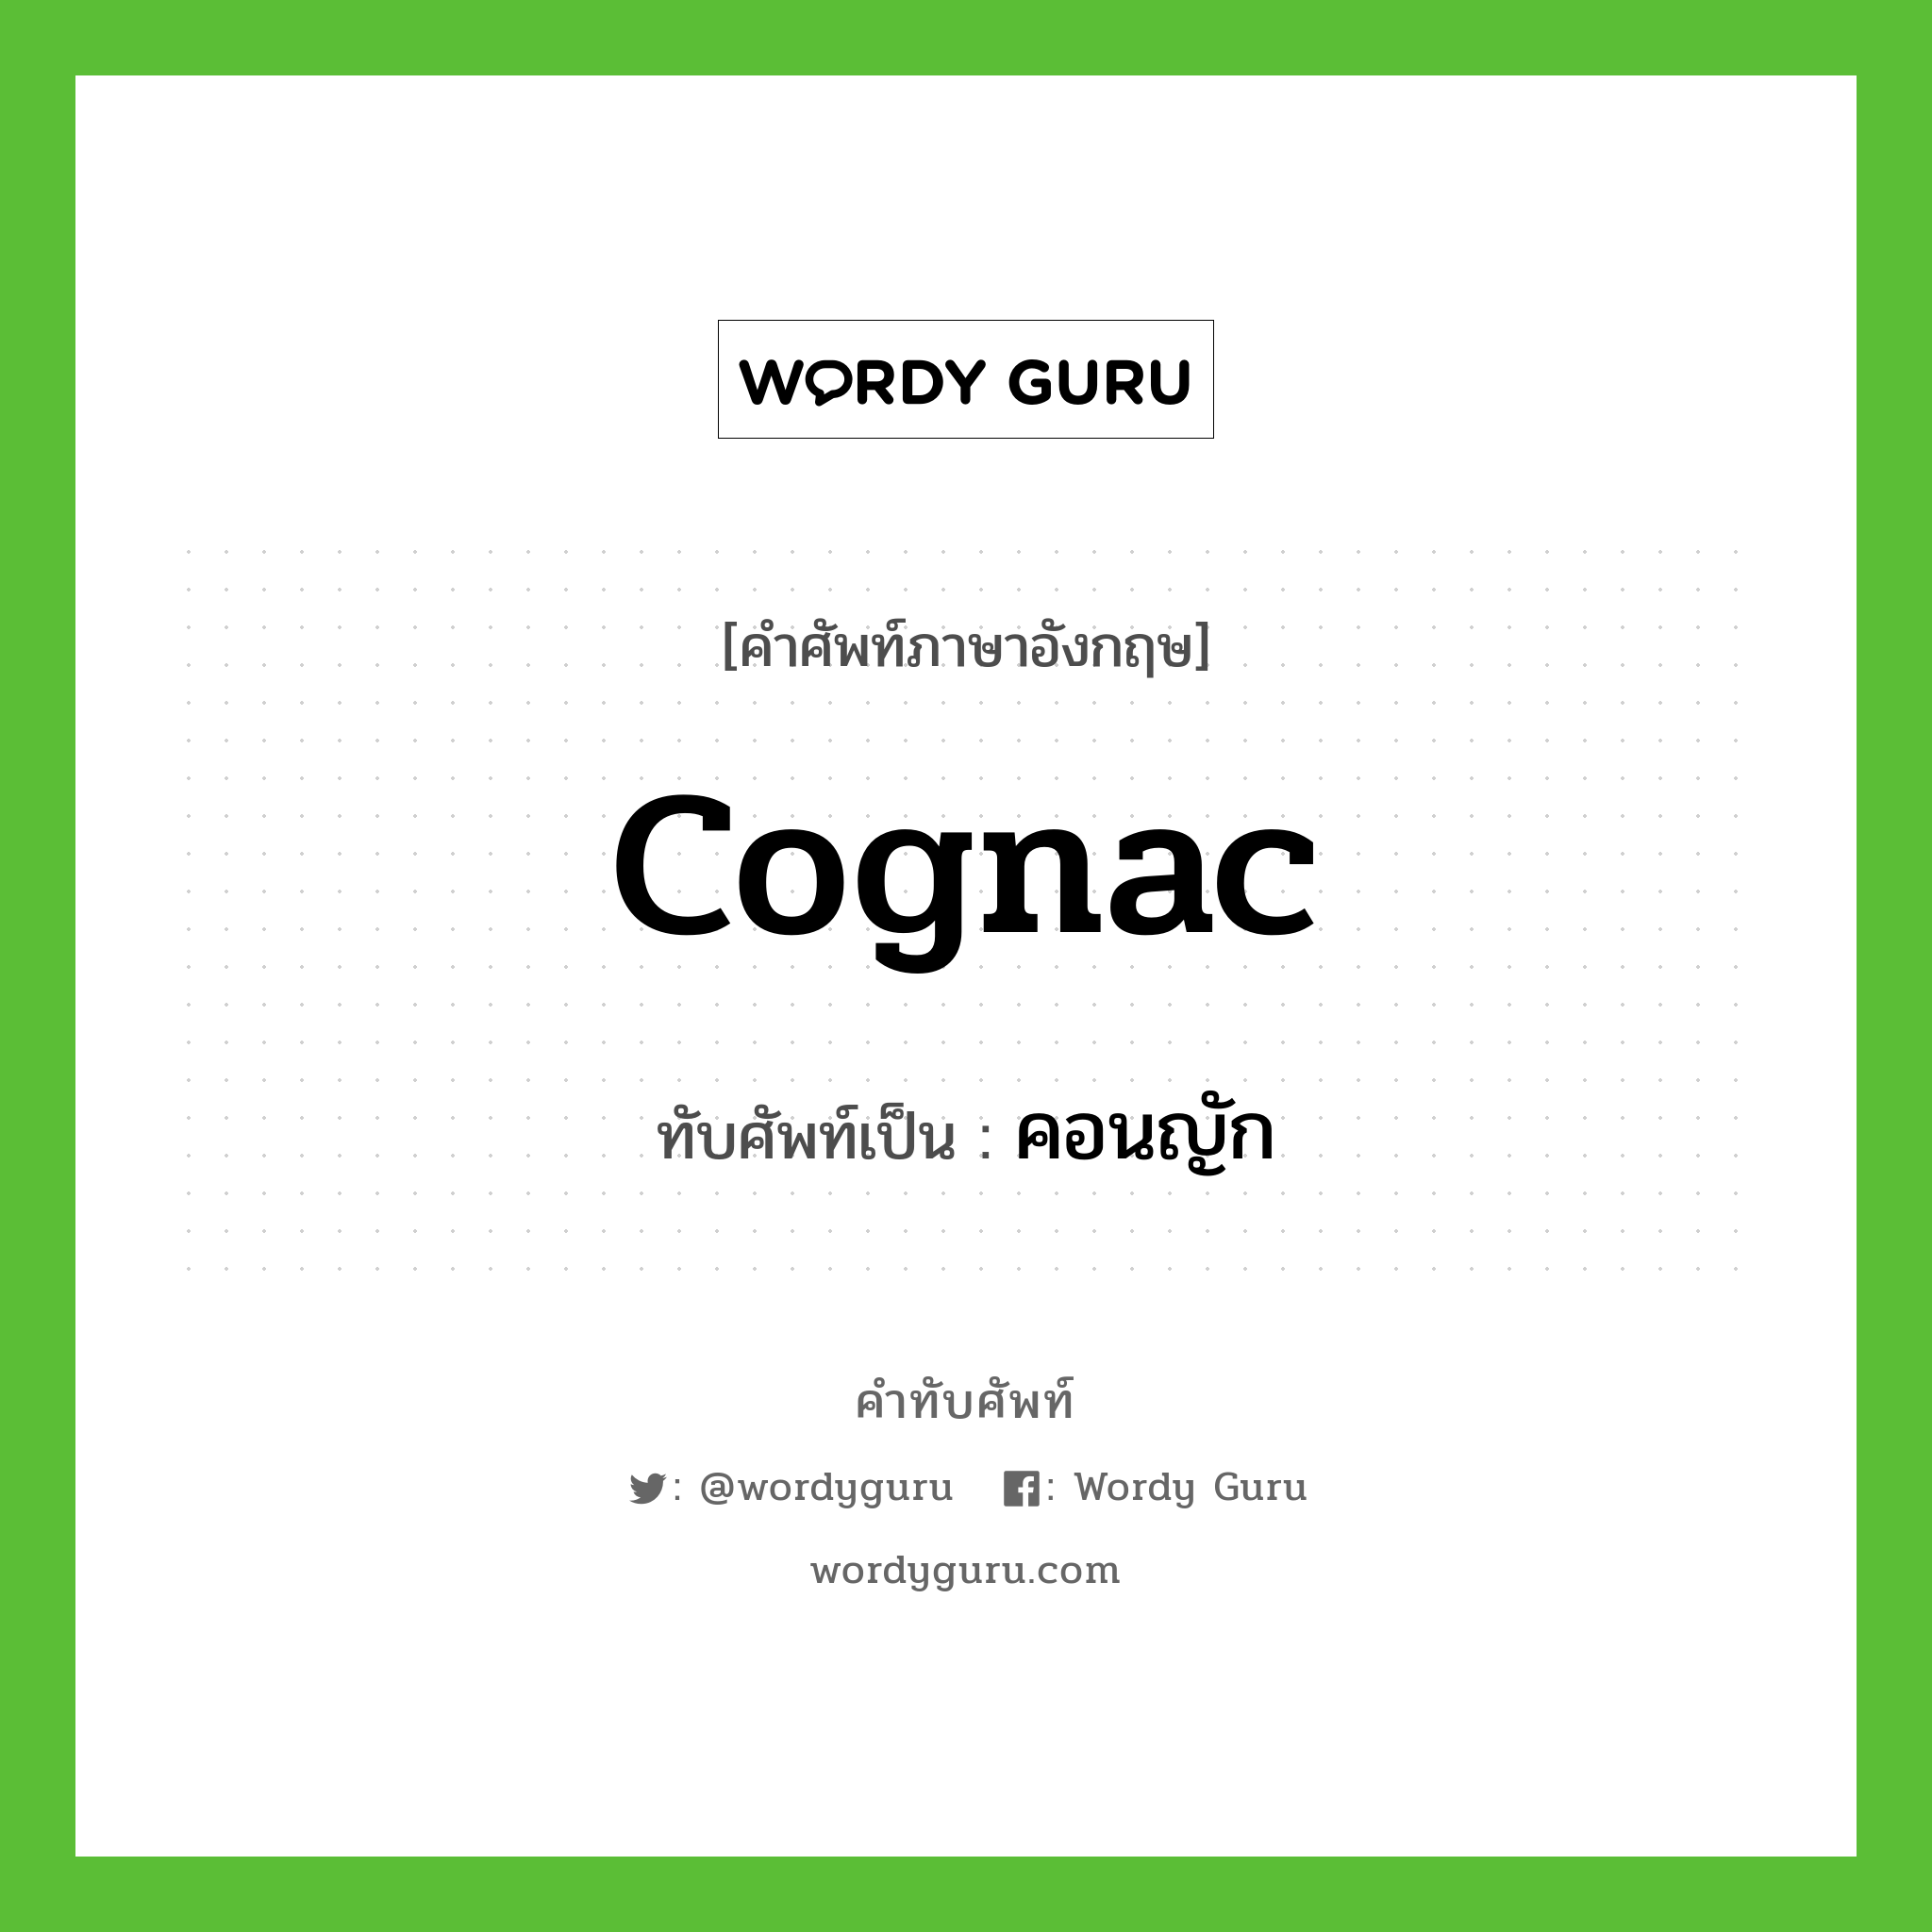 Cognac เขียนเป็นคำไทยว่าอะไร?, คำศัพท์ภาษาอังกฤษ Cognac ทับศัพท์เป็น คอนญัก